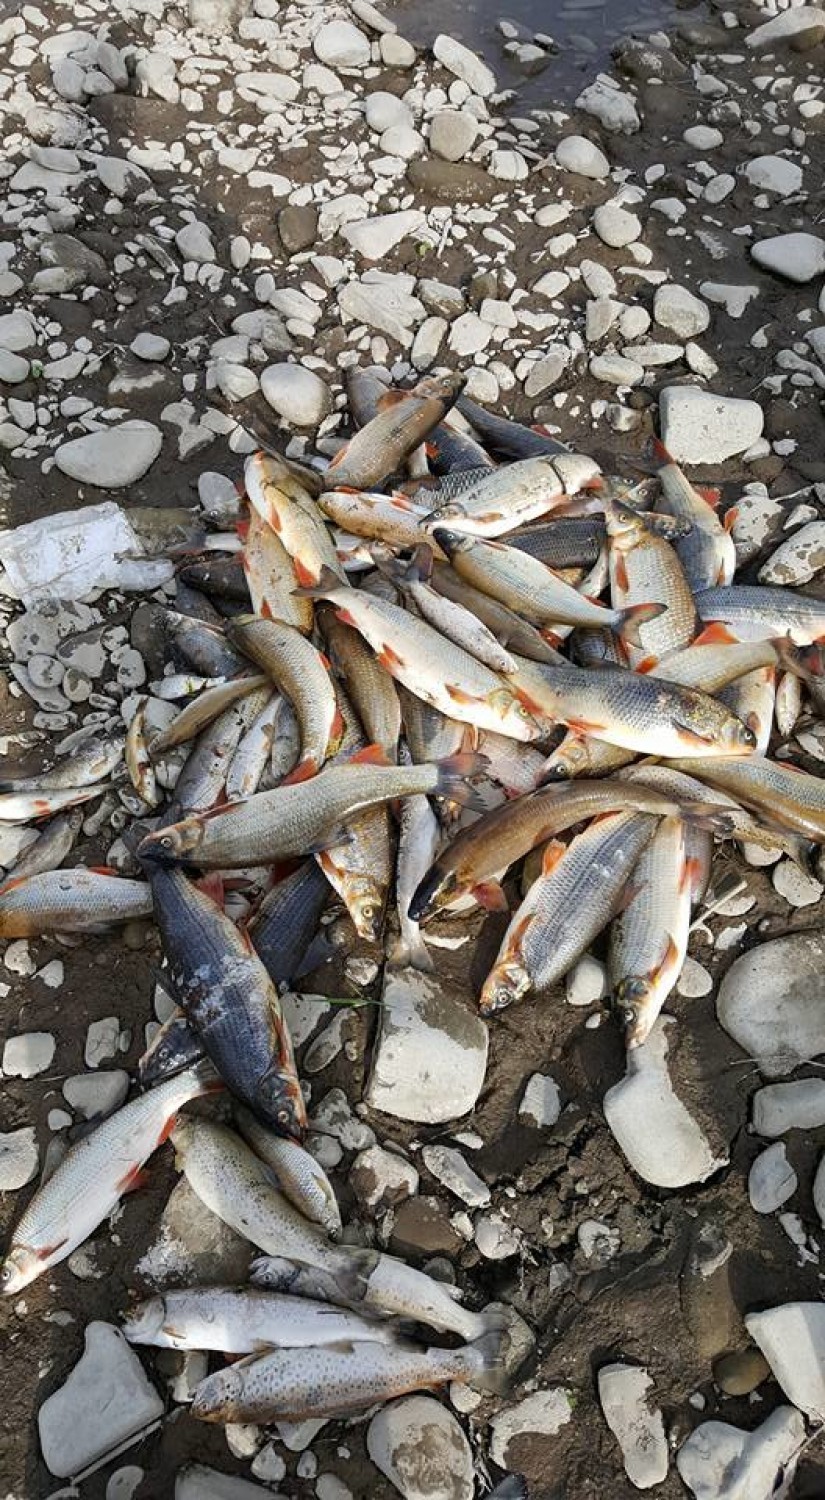 Pożar w Żywcu to także tragedia ekologiczna. Tysiące śniętych ryb w Sole! Wędkarze są zrozpaczeni [ZDJĘCIA+AKTUALIZACJA]